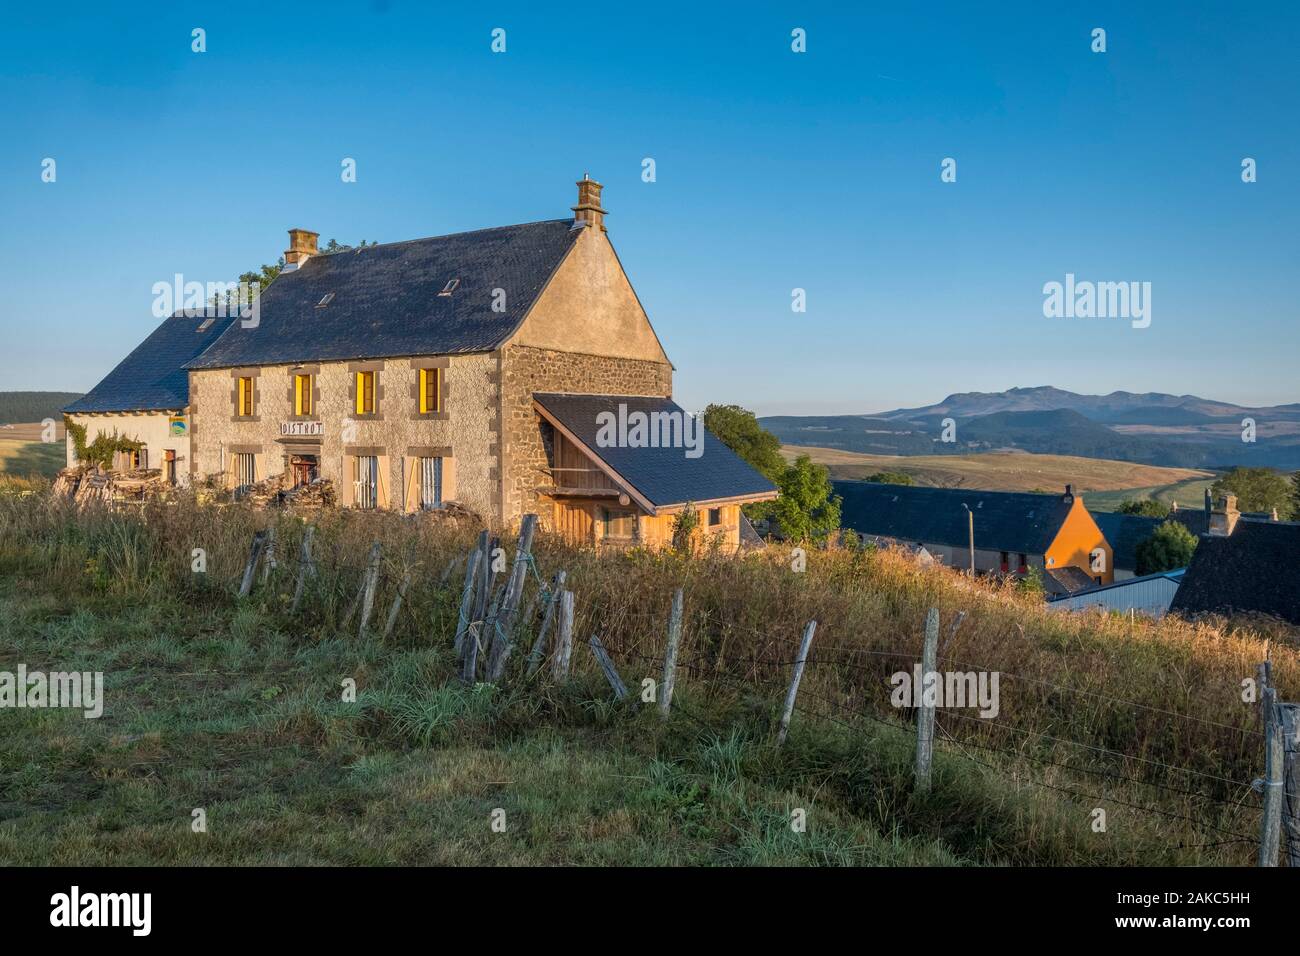 Francia, Puy de Dome, Compains, frazione di Brion, Cezallier altopiano, Parc naturel régional des Volcans d'Auvergne, Auvergne parco naturale Regionale dei Vulcani Foto Stock